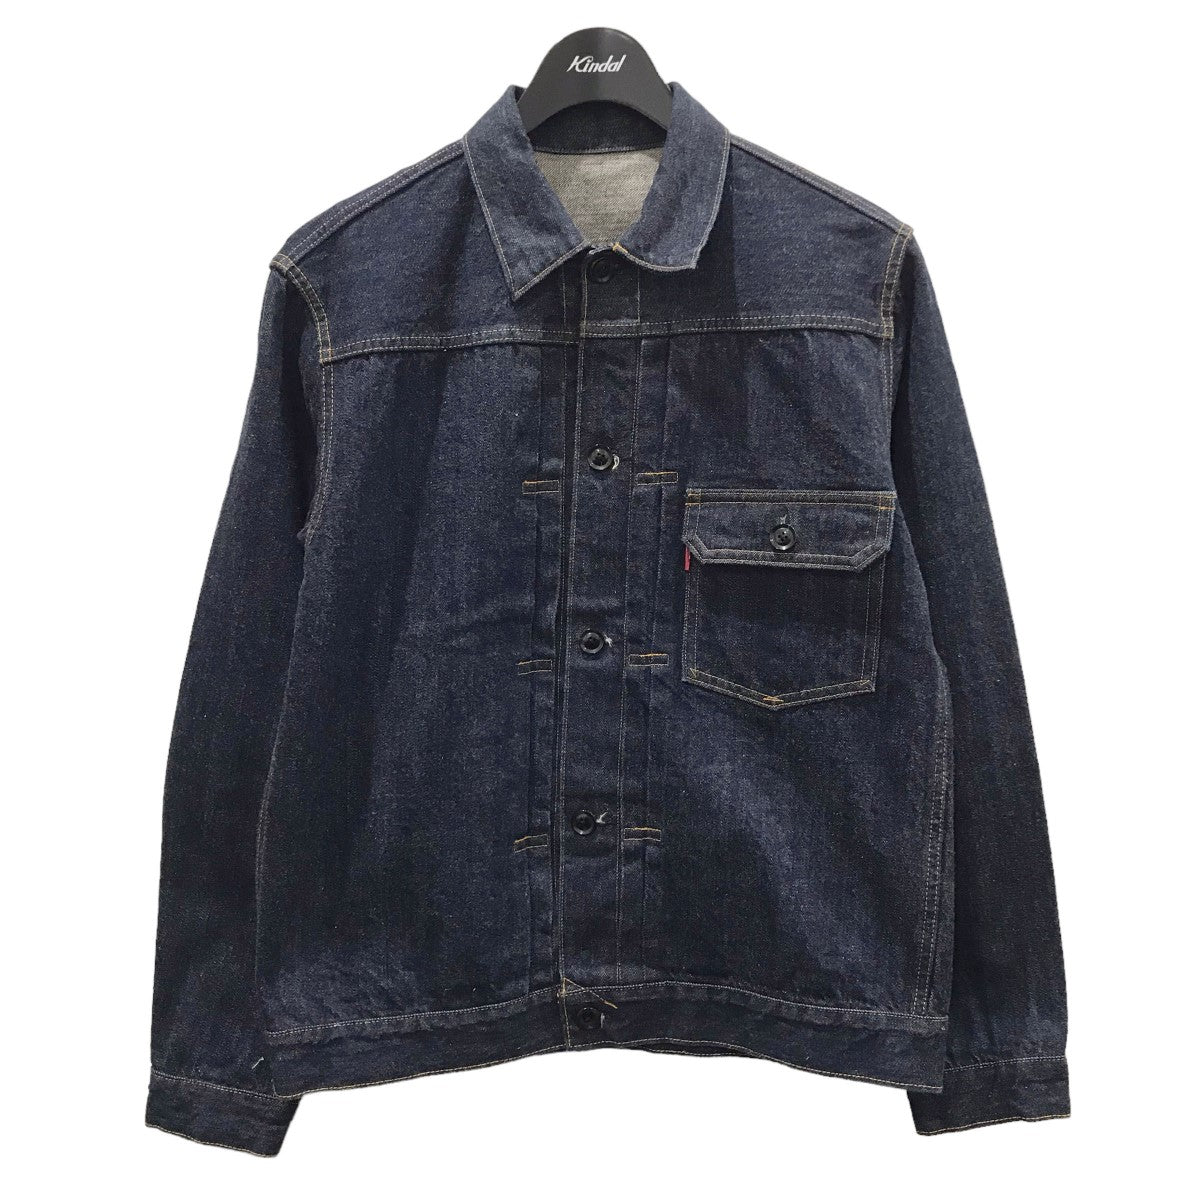 18,799円美品cantate T-back denim jacket 1st L 48